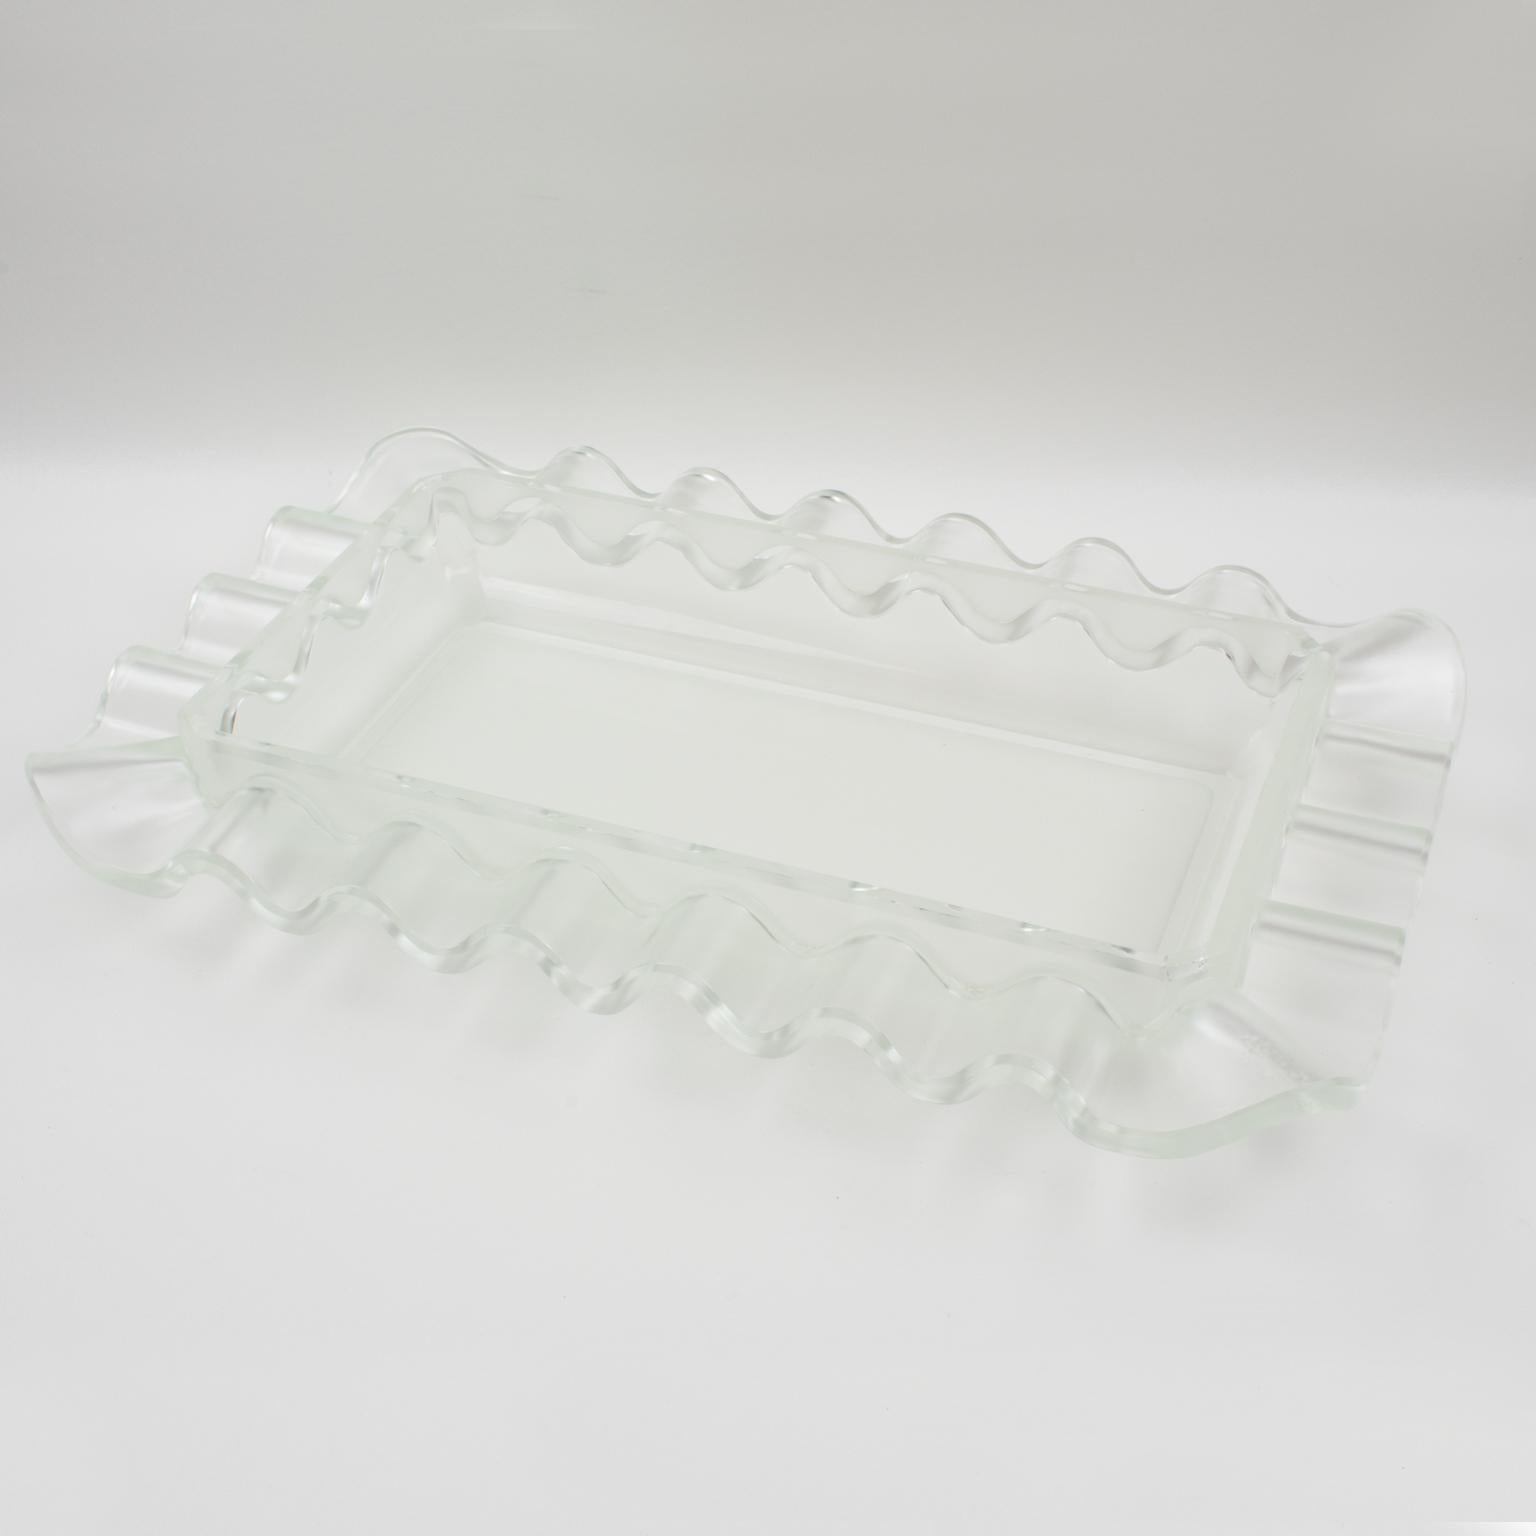 Diese exquisite, von Verlys, Frankreich, gefertigte Art-Déco-Schale zeichnet sich durch ein atemberaubendes Milchglasmuster mit geometrischem Wellenmuster aus. Produziert von Les Verreries d'Art Verlys & des Hanots - S.A. Holophane, Paris, diese